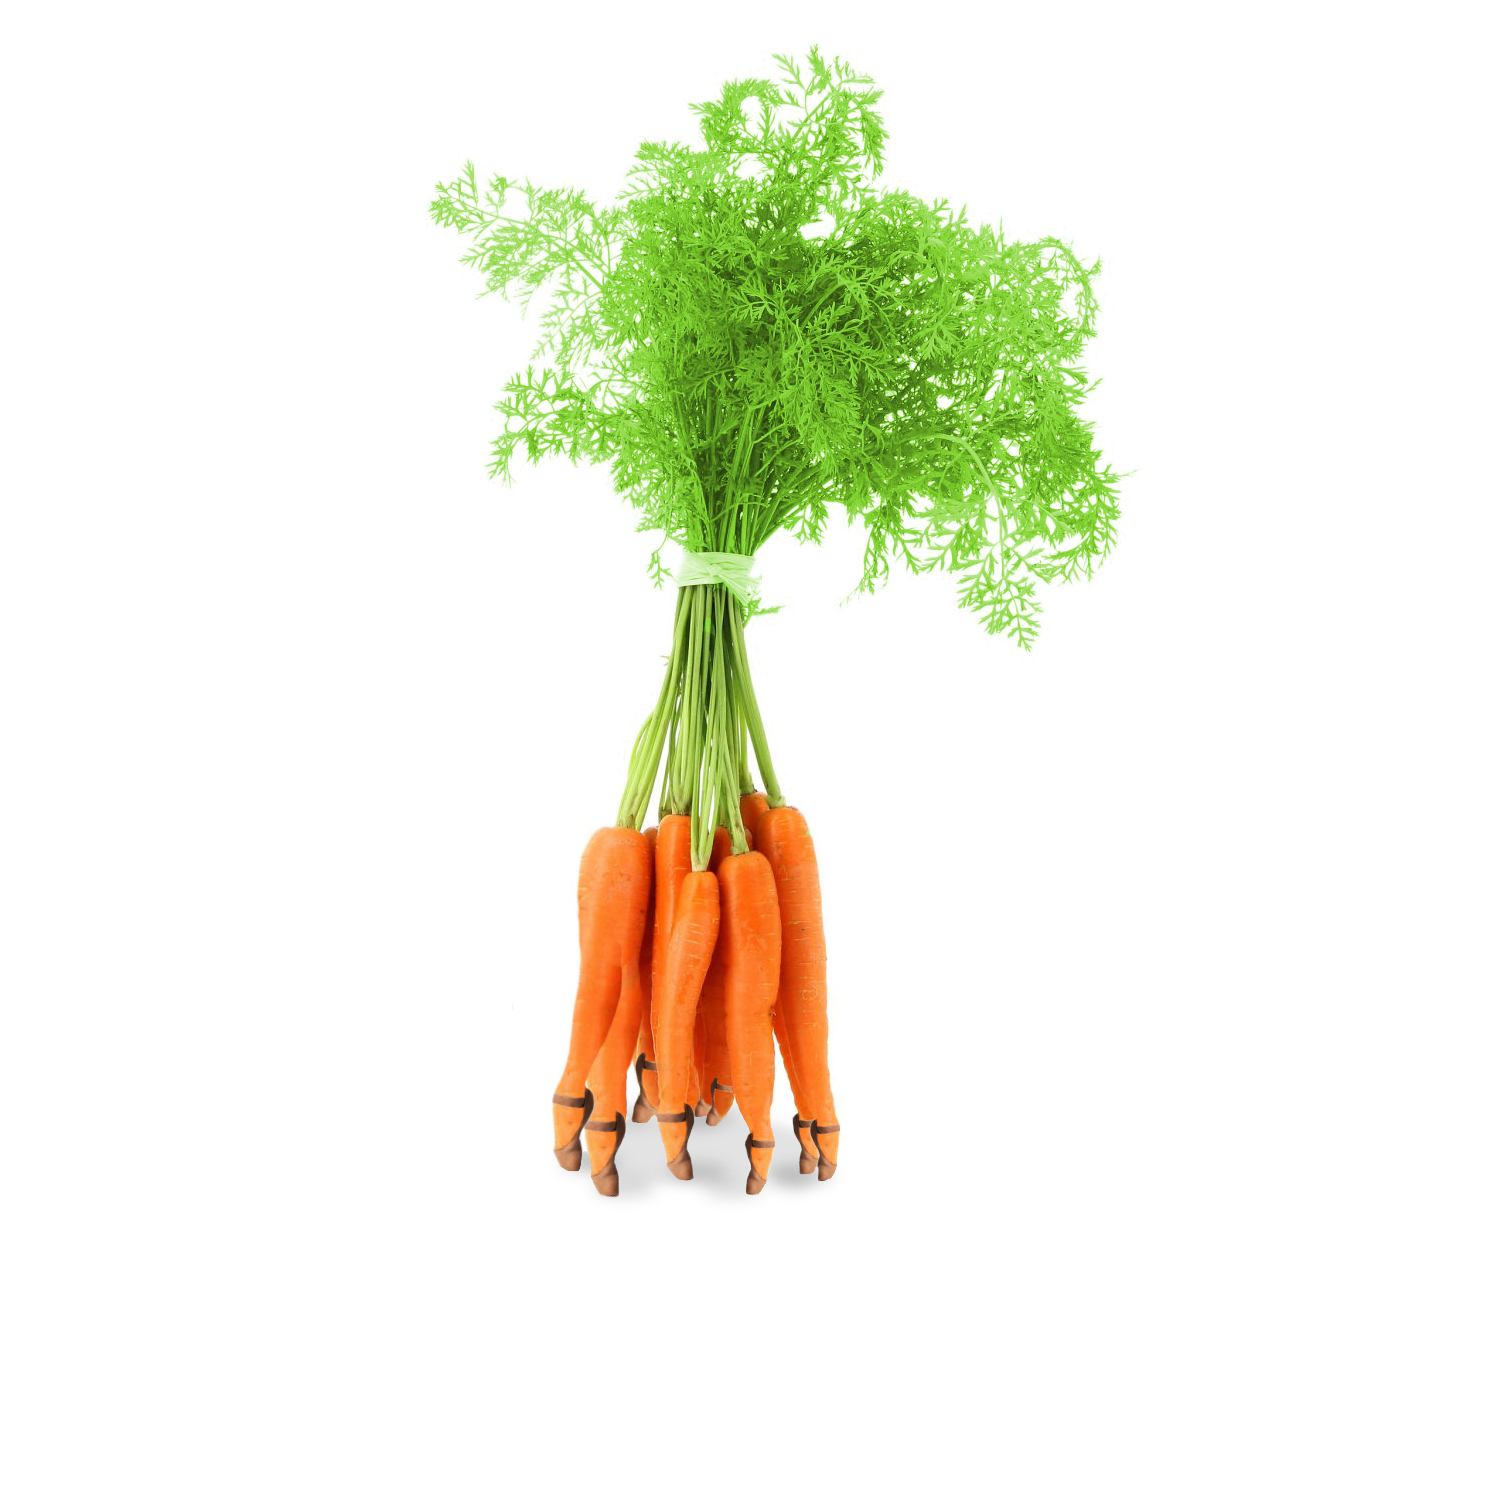 Les carottes sont cuisses